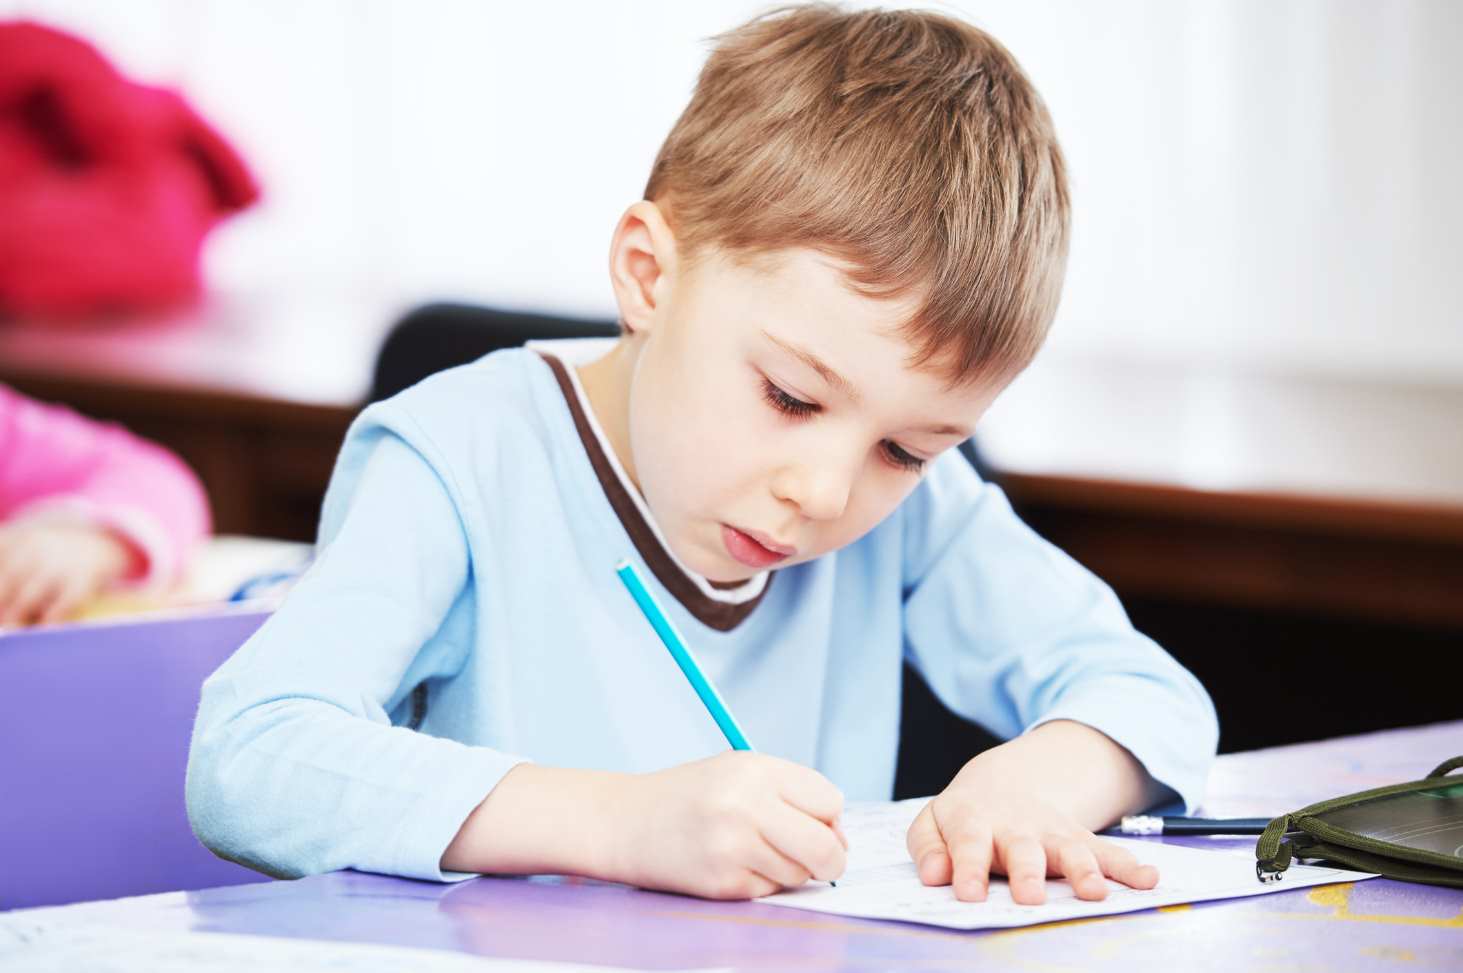 Лайфхаки от учителя: как научить детей писать красиво и повысить внимание учащихся>